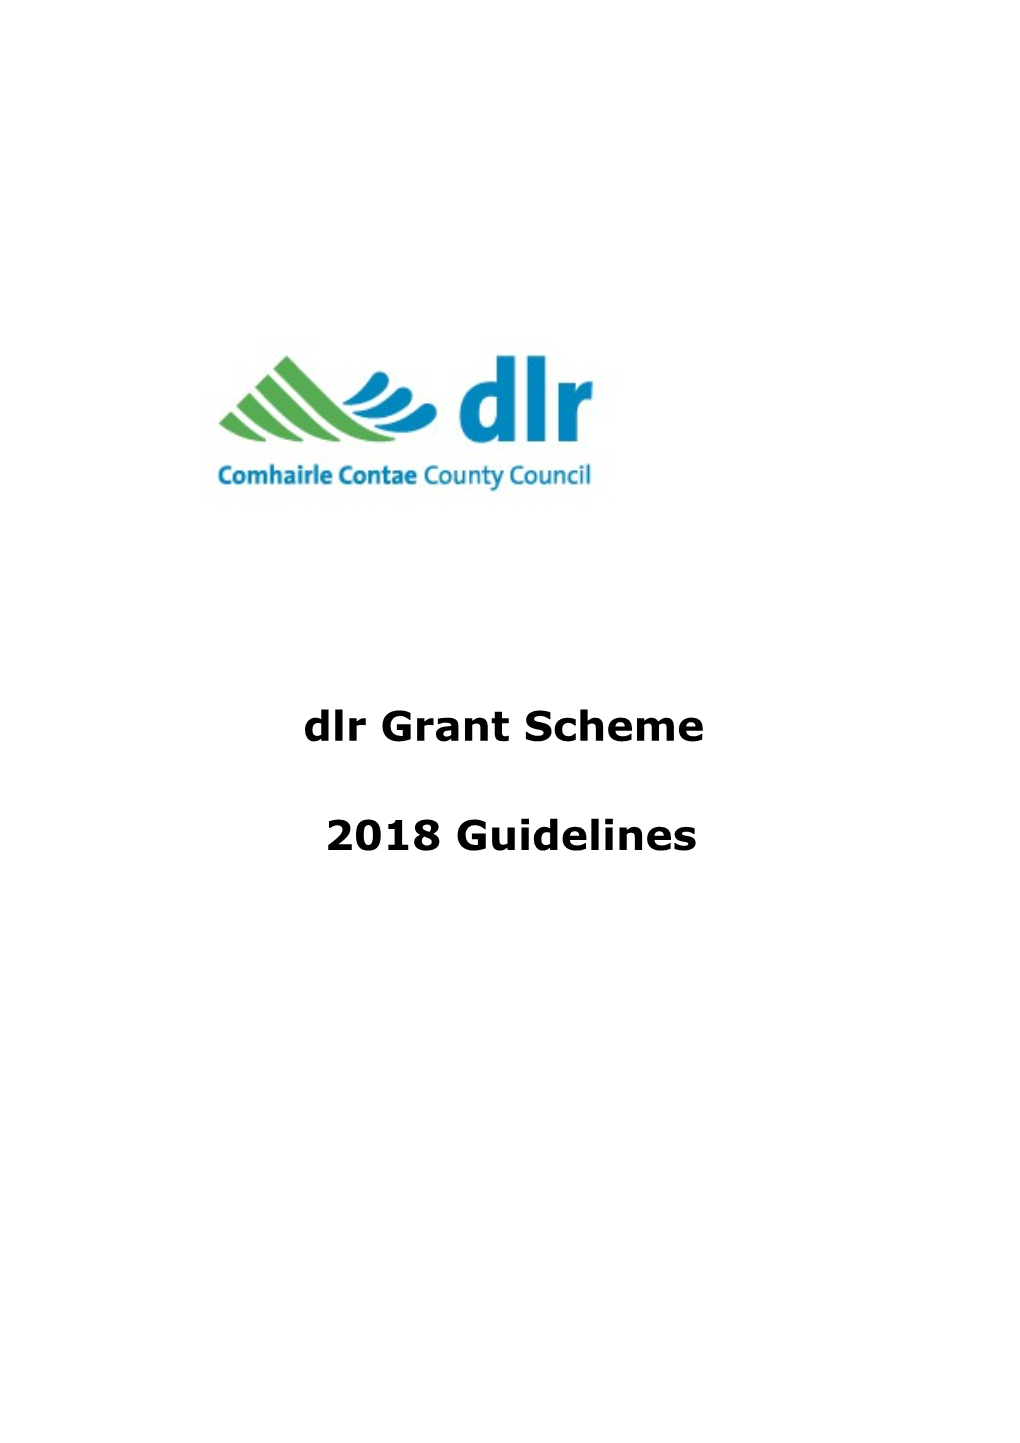 Purpose of the Dlr Grant Scheme 2